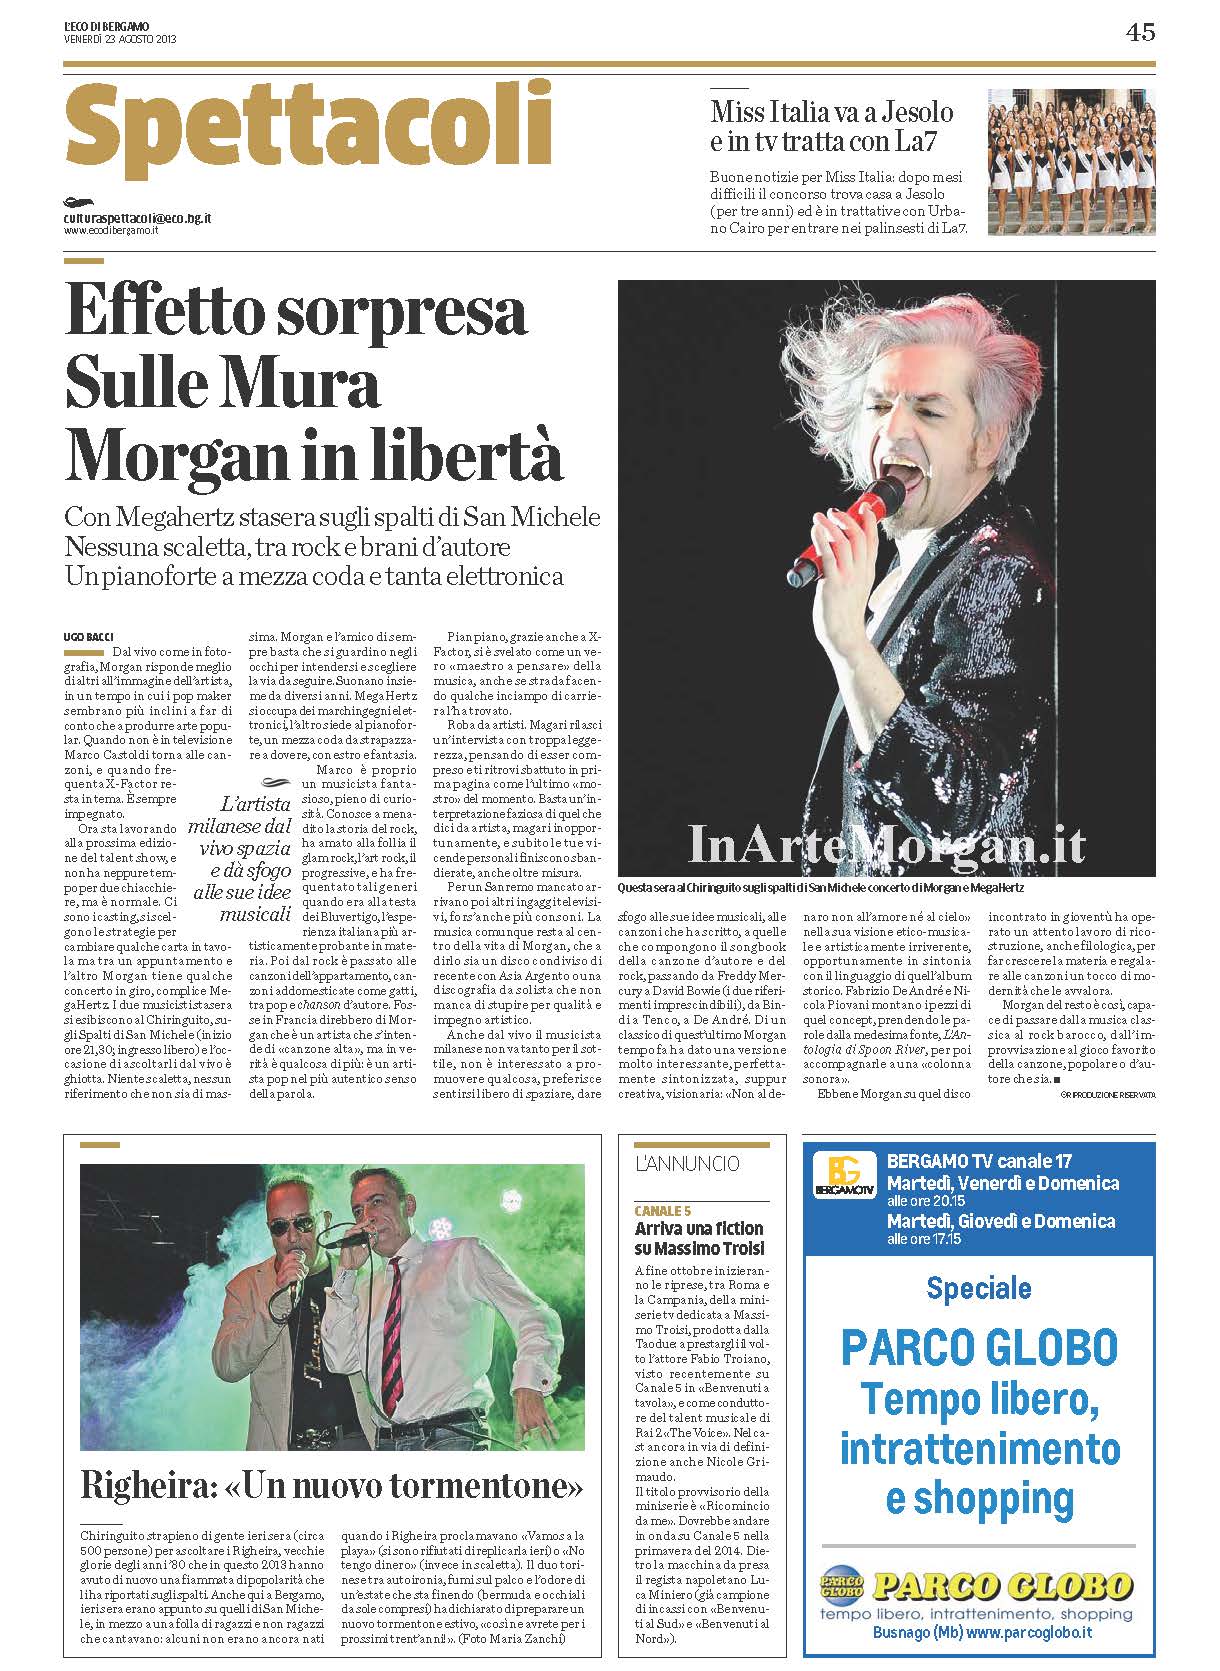 Morgan - L'eco di Bergamo